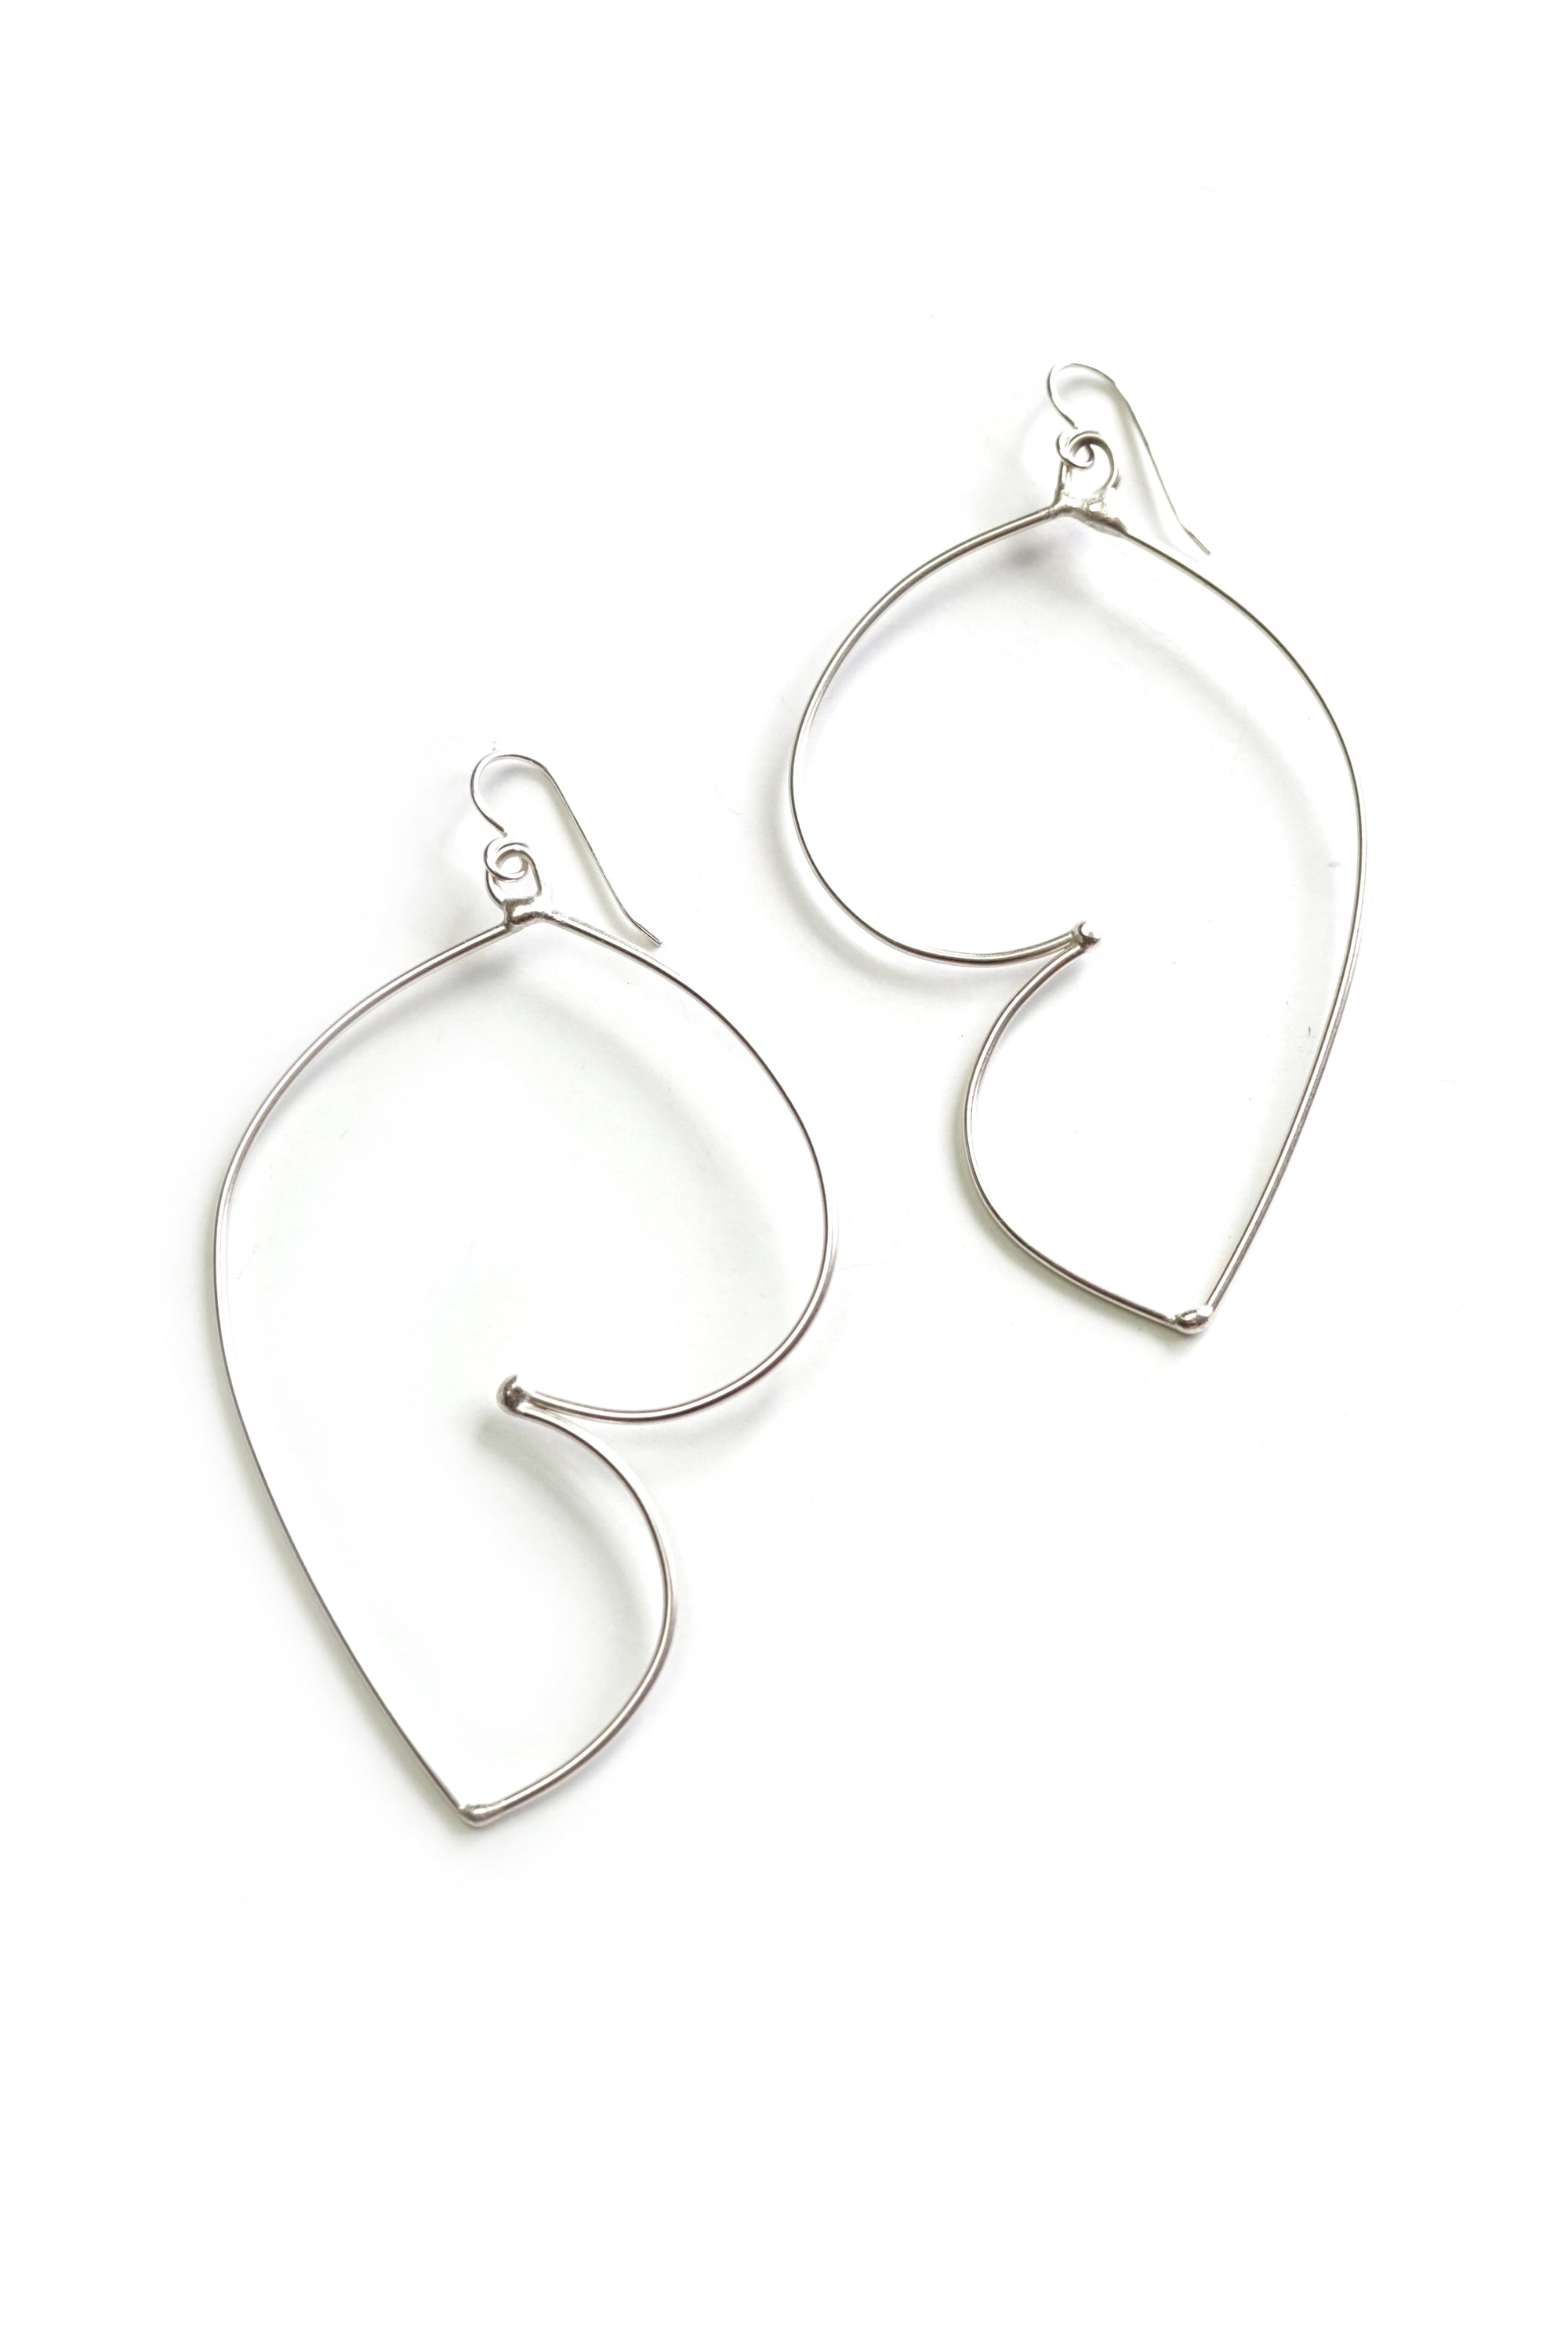 Volupte Statement Earrings in silver - sample sale